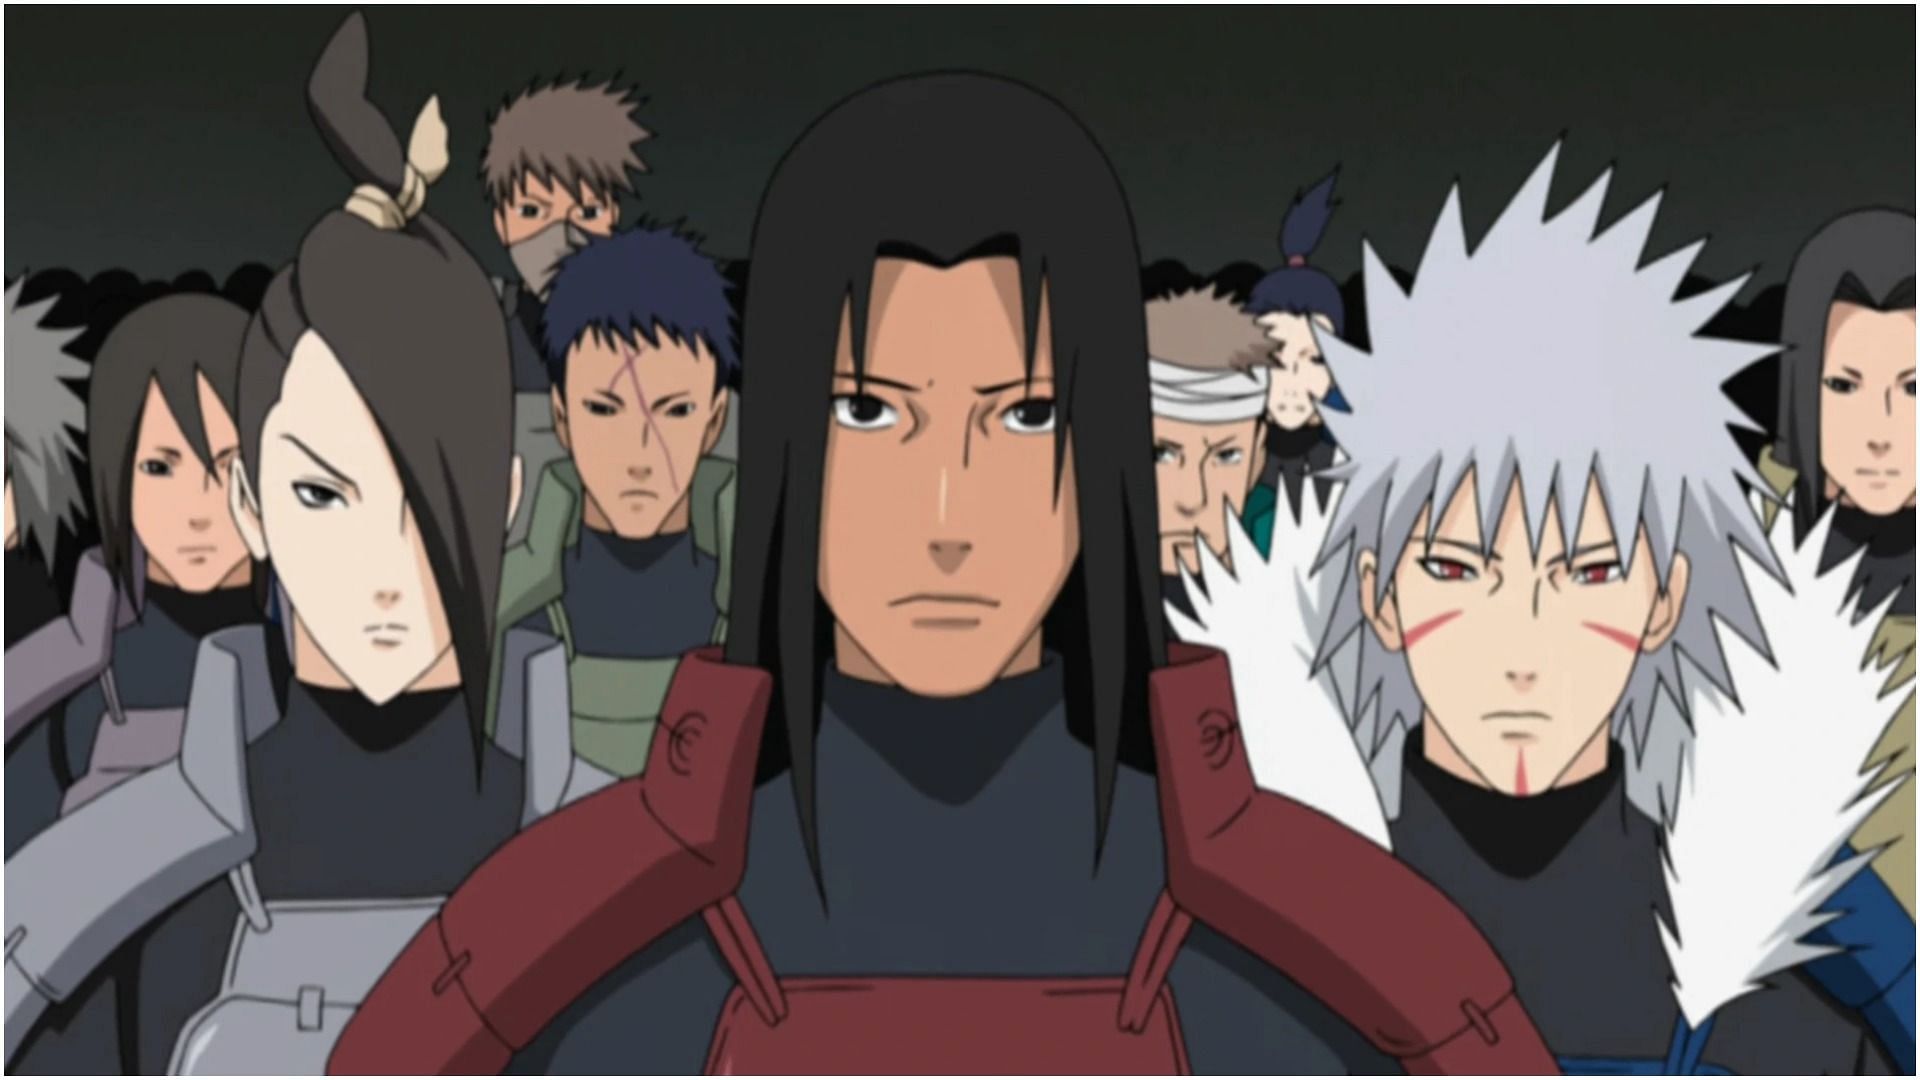 Senju clan members as seen in Naruto (Image via Studio Pierrot)